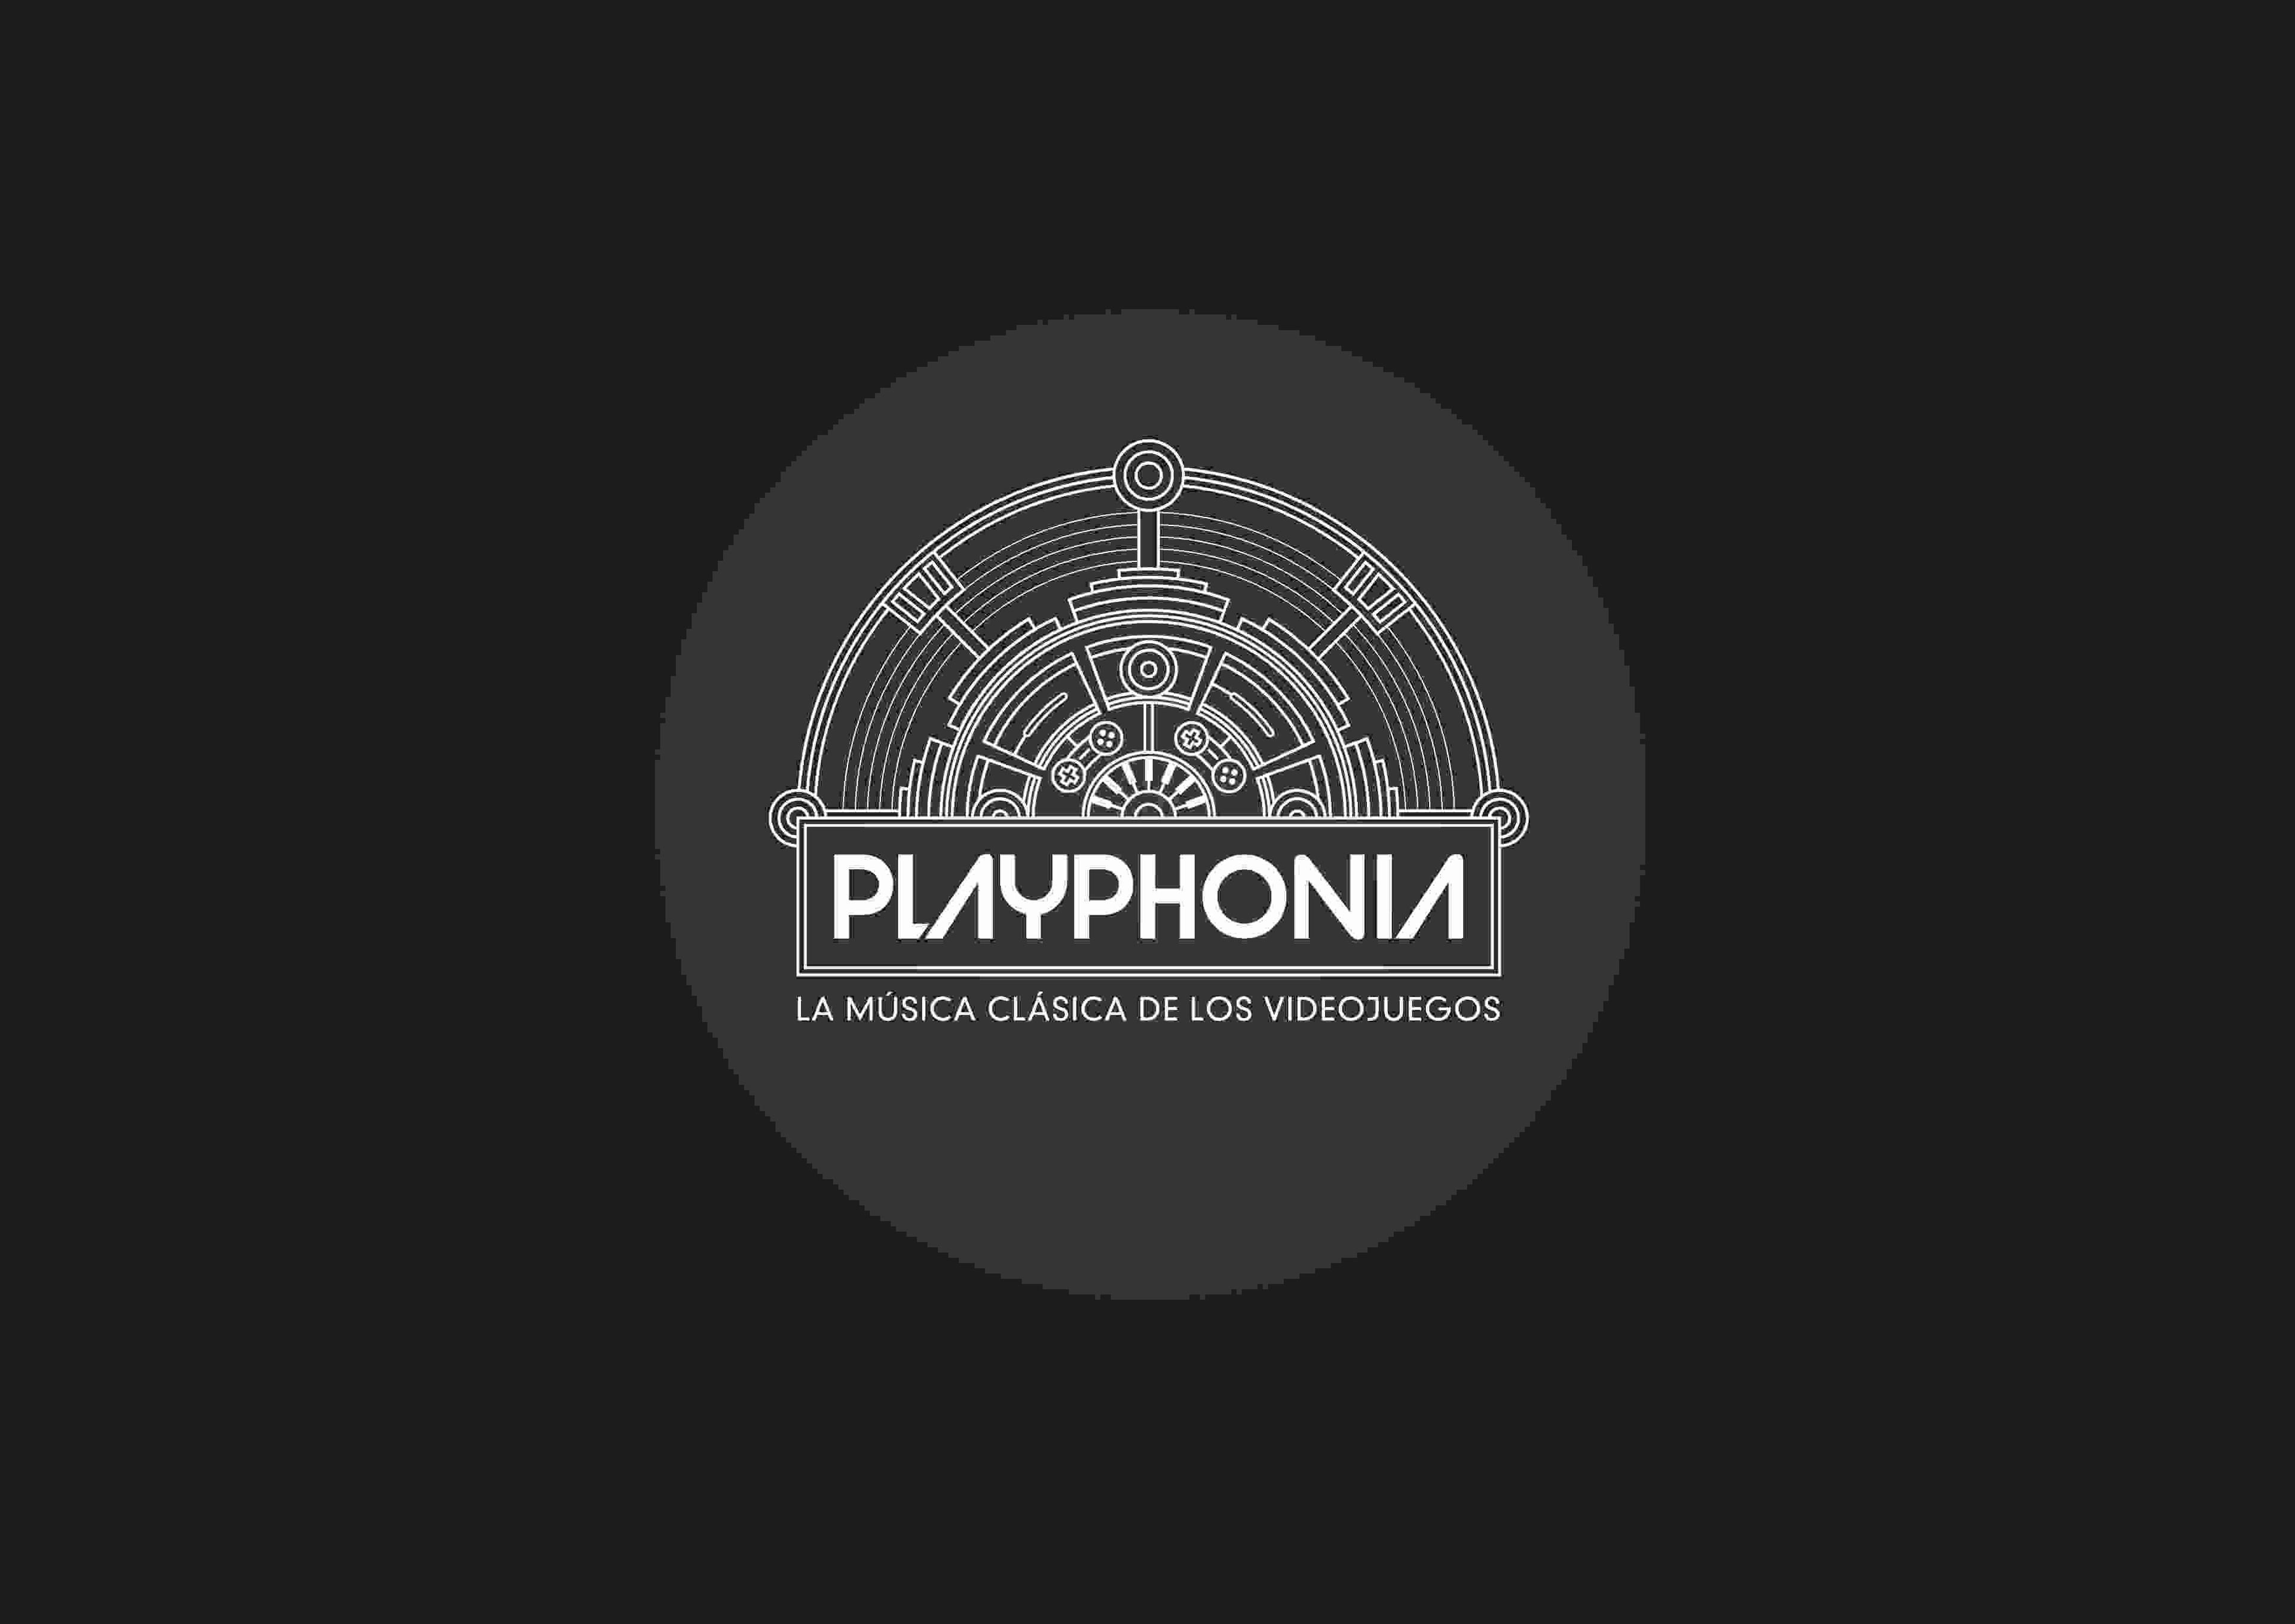 Playphonia 2017